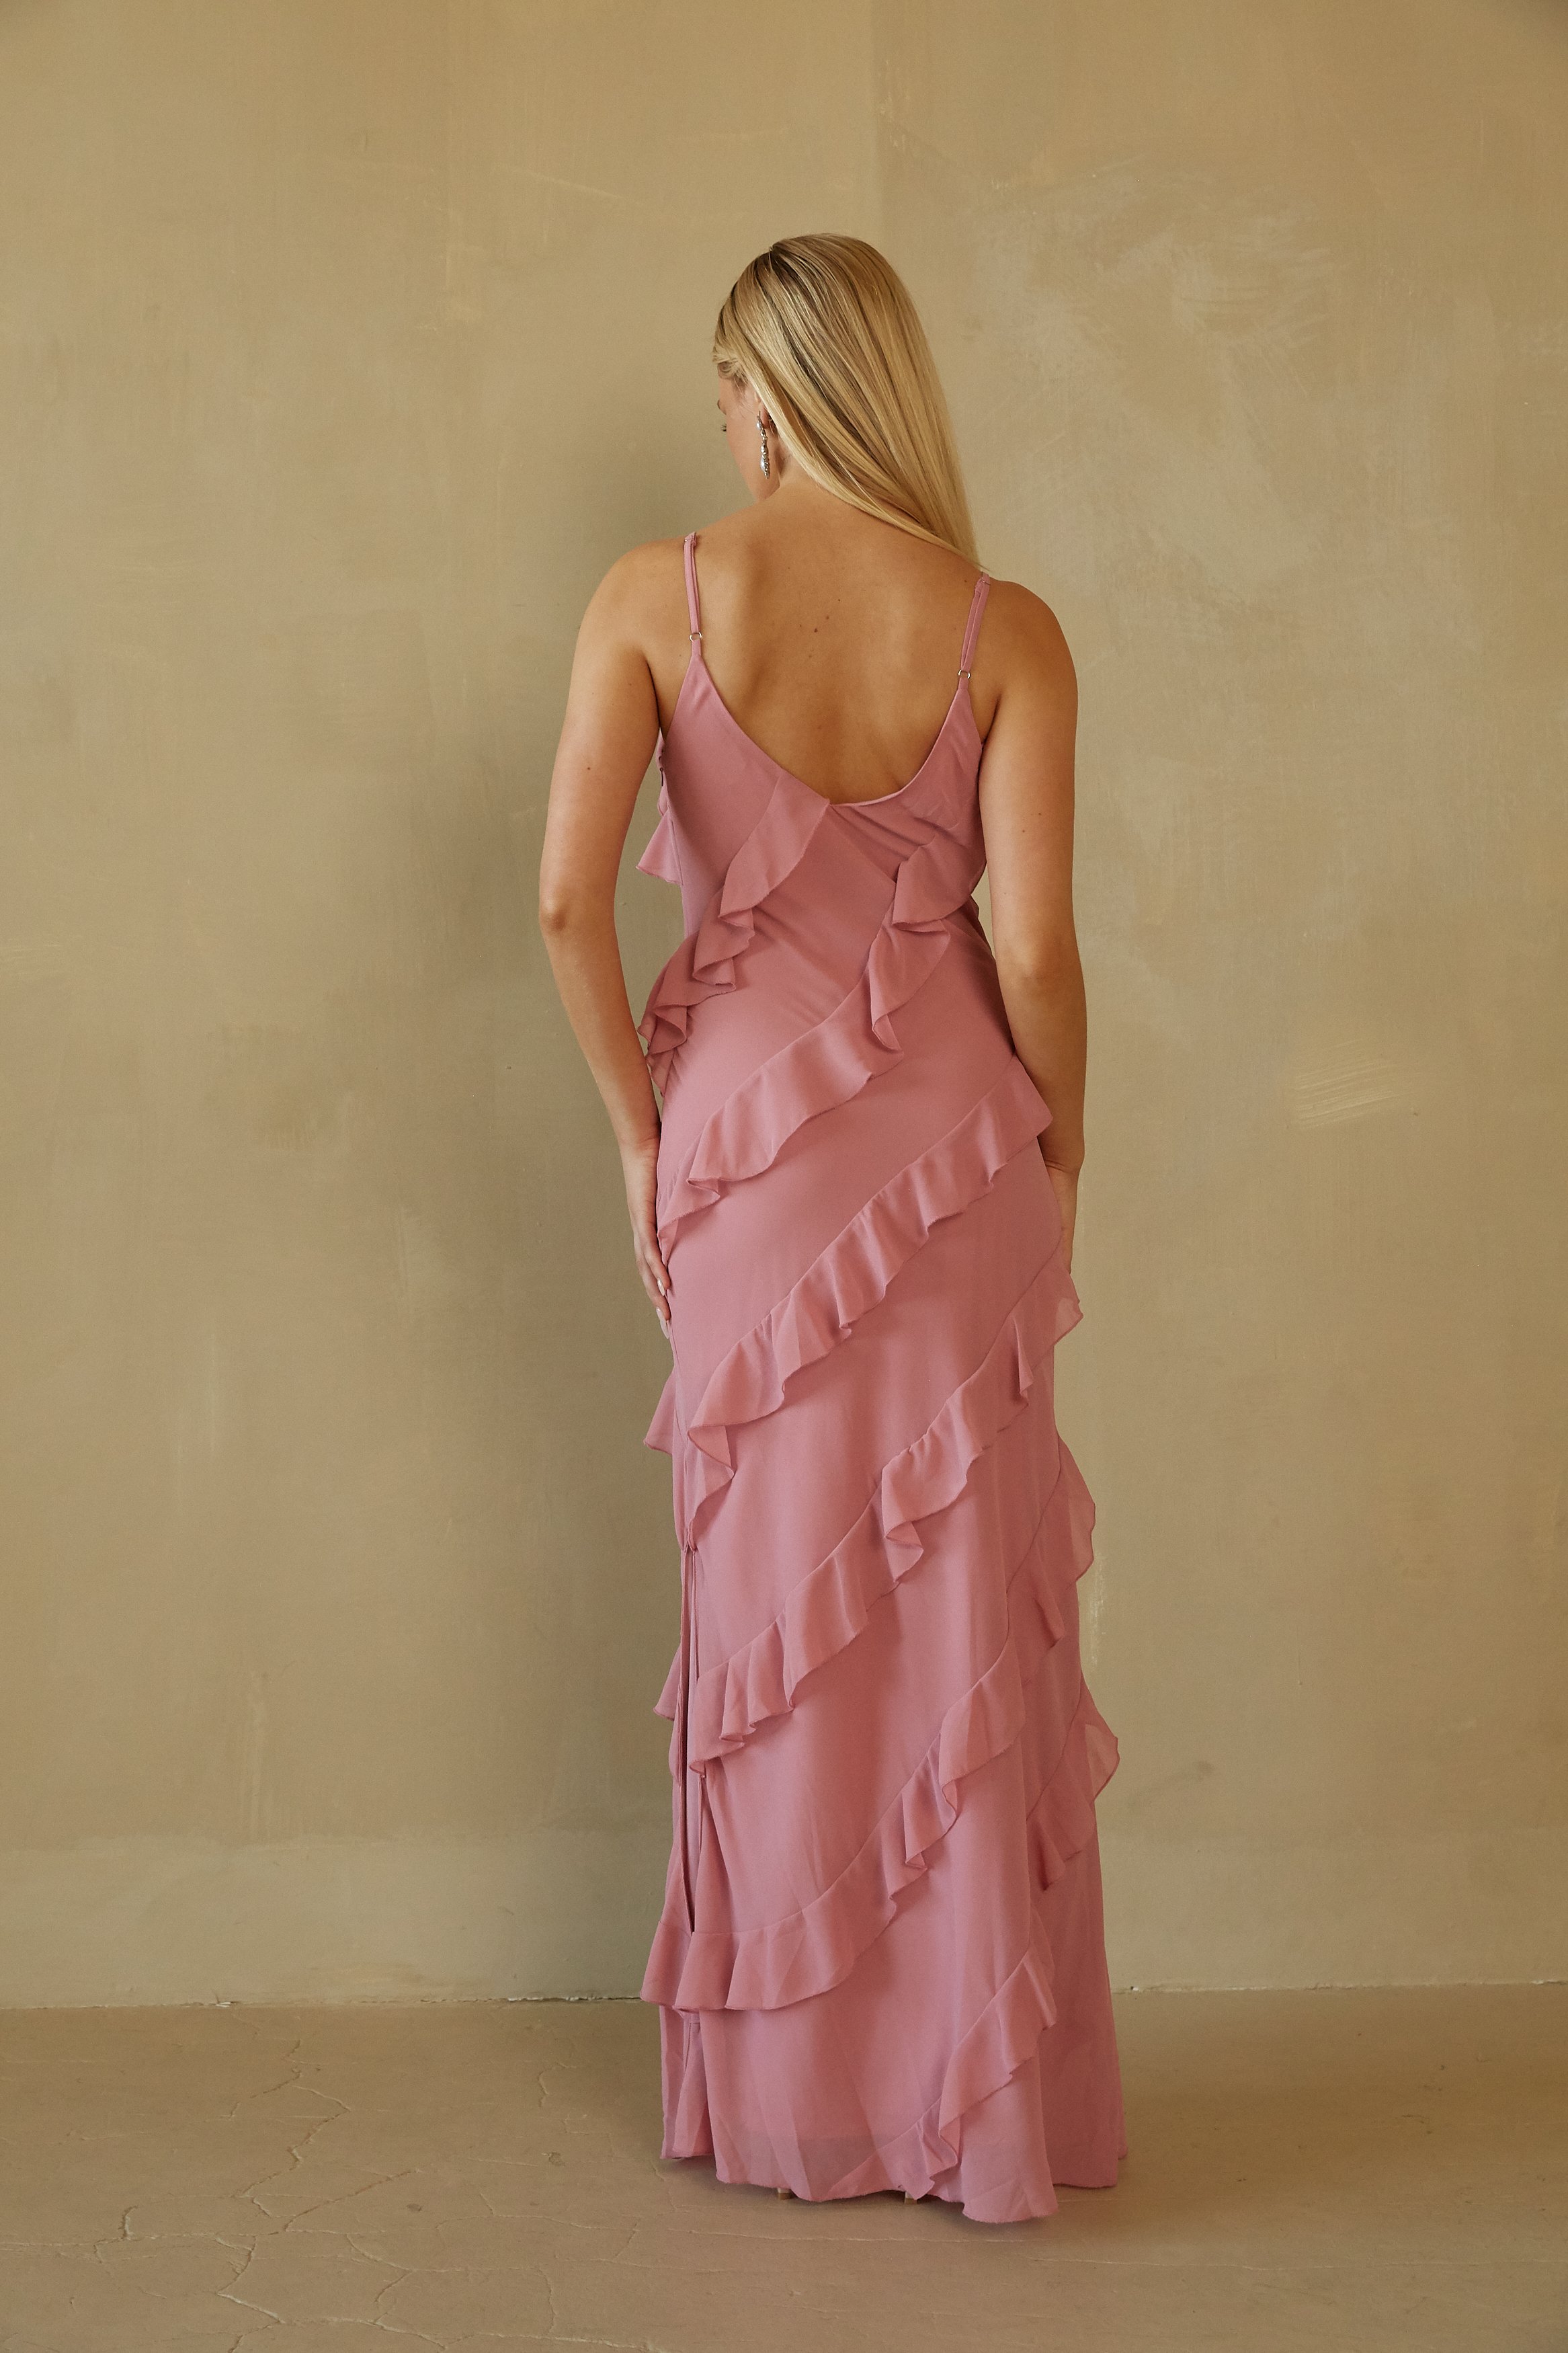 elizabeth-dusty-rose-mauve-maxi-ruffle-dress-with-asymmetrical-ruffles-bridal-wedding-guest-dress-formal-dress-08.jpg